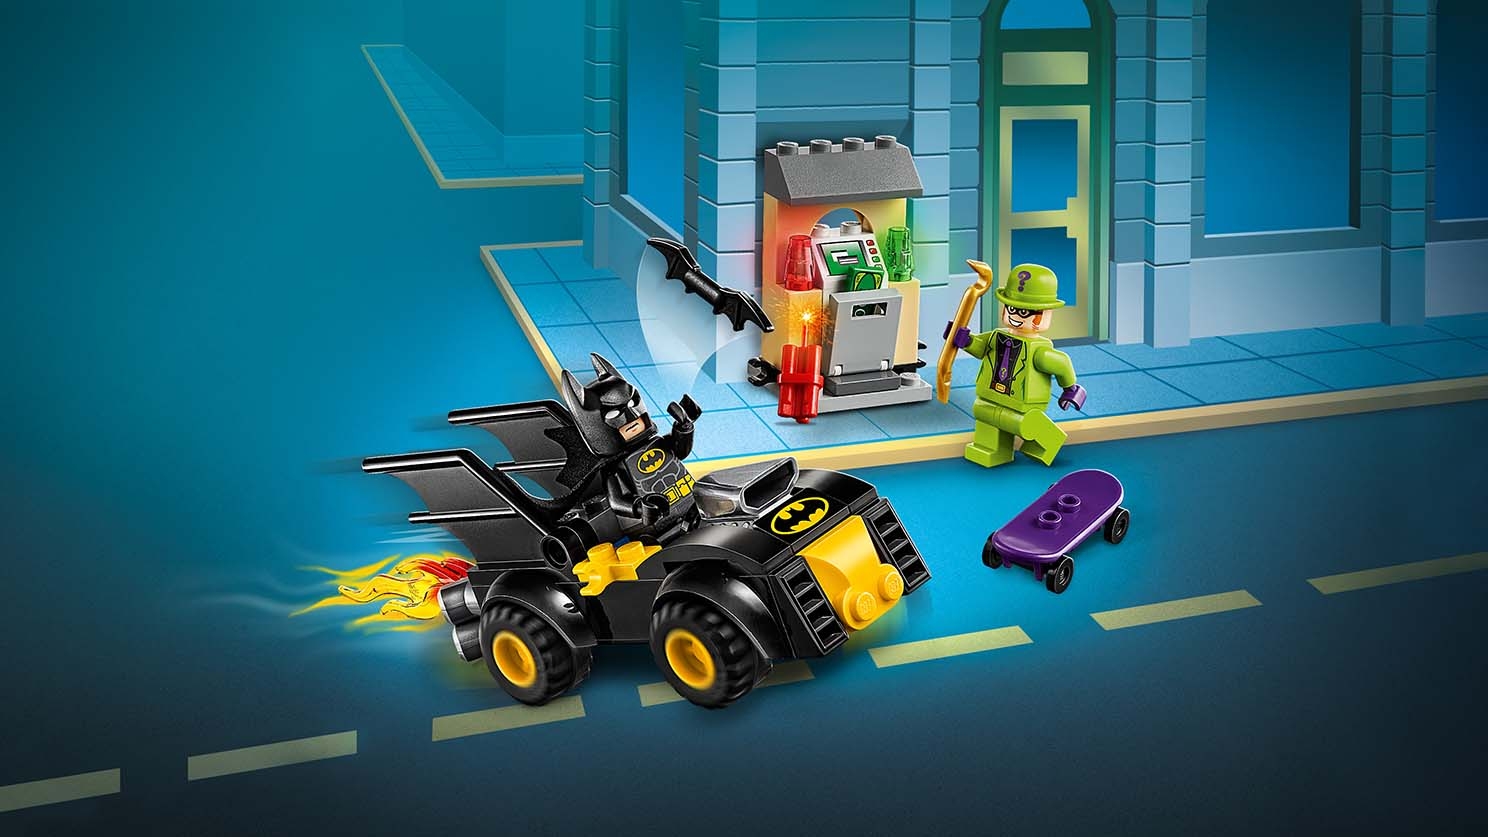 バットマン™ vs.リドラー™ の強盗 - ビデオ - LEGO.comキッズ